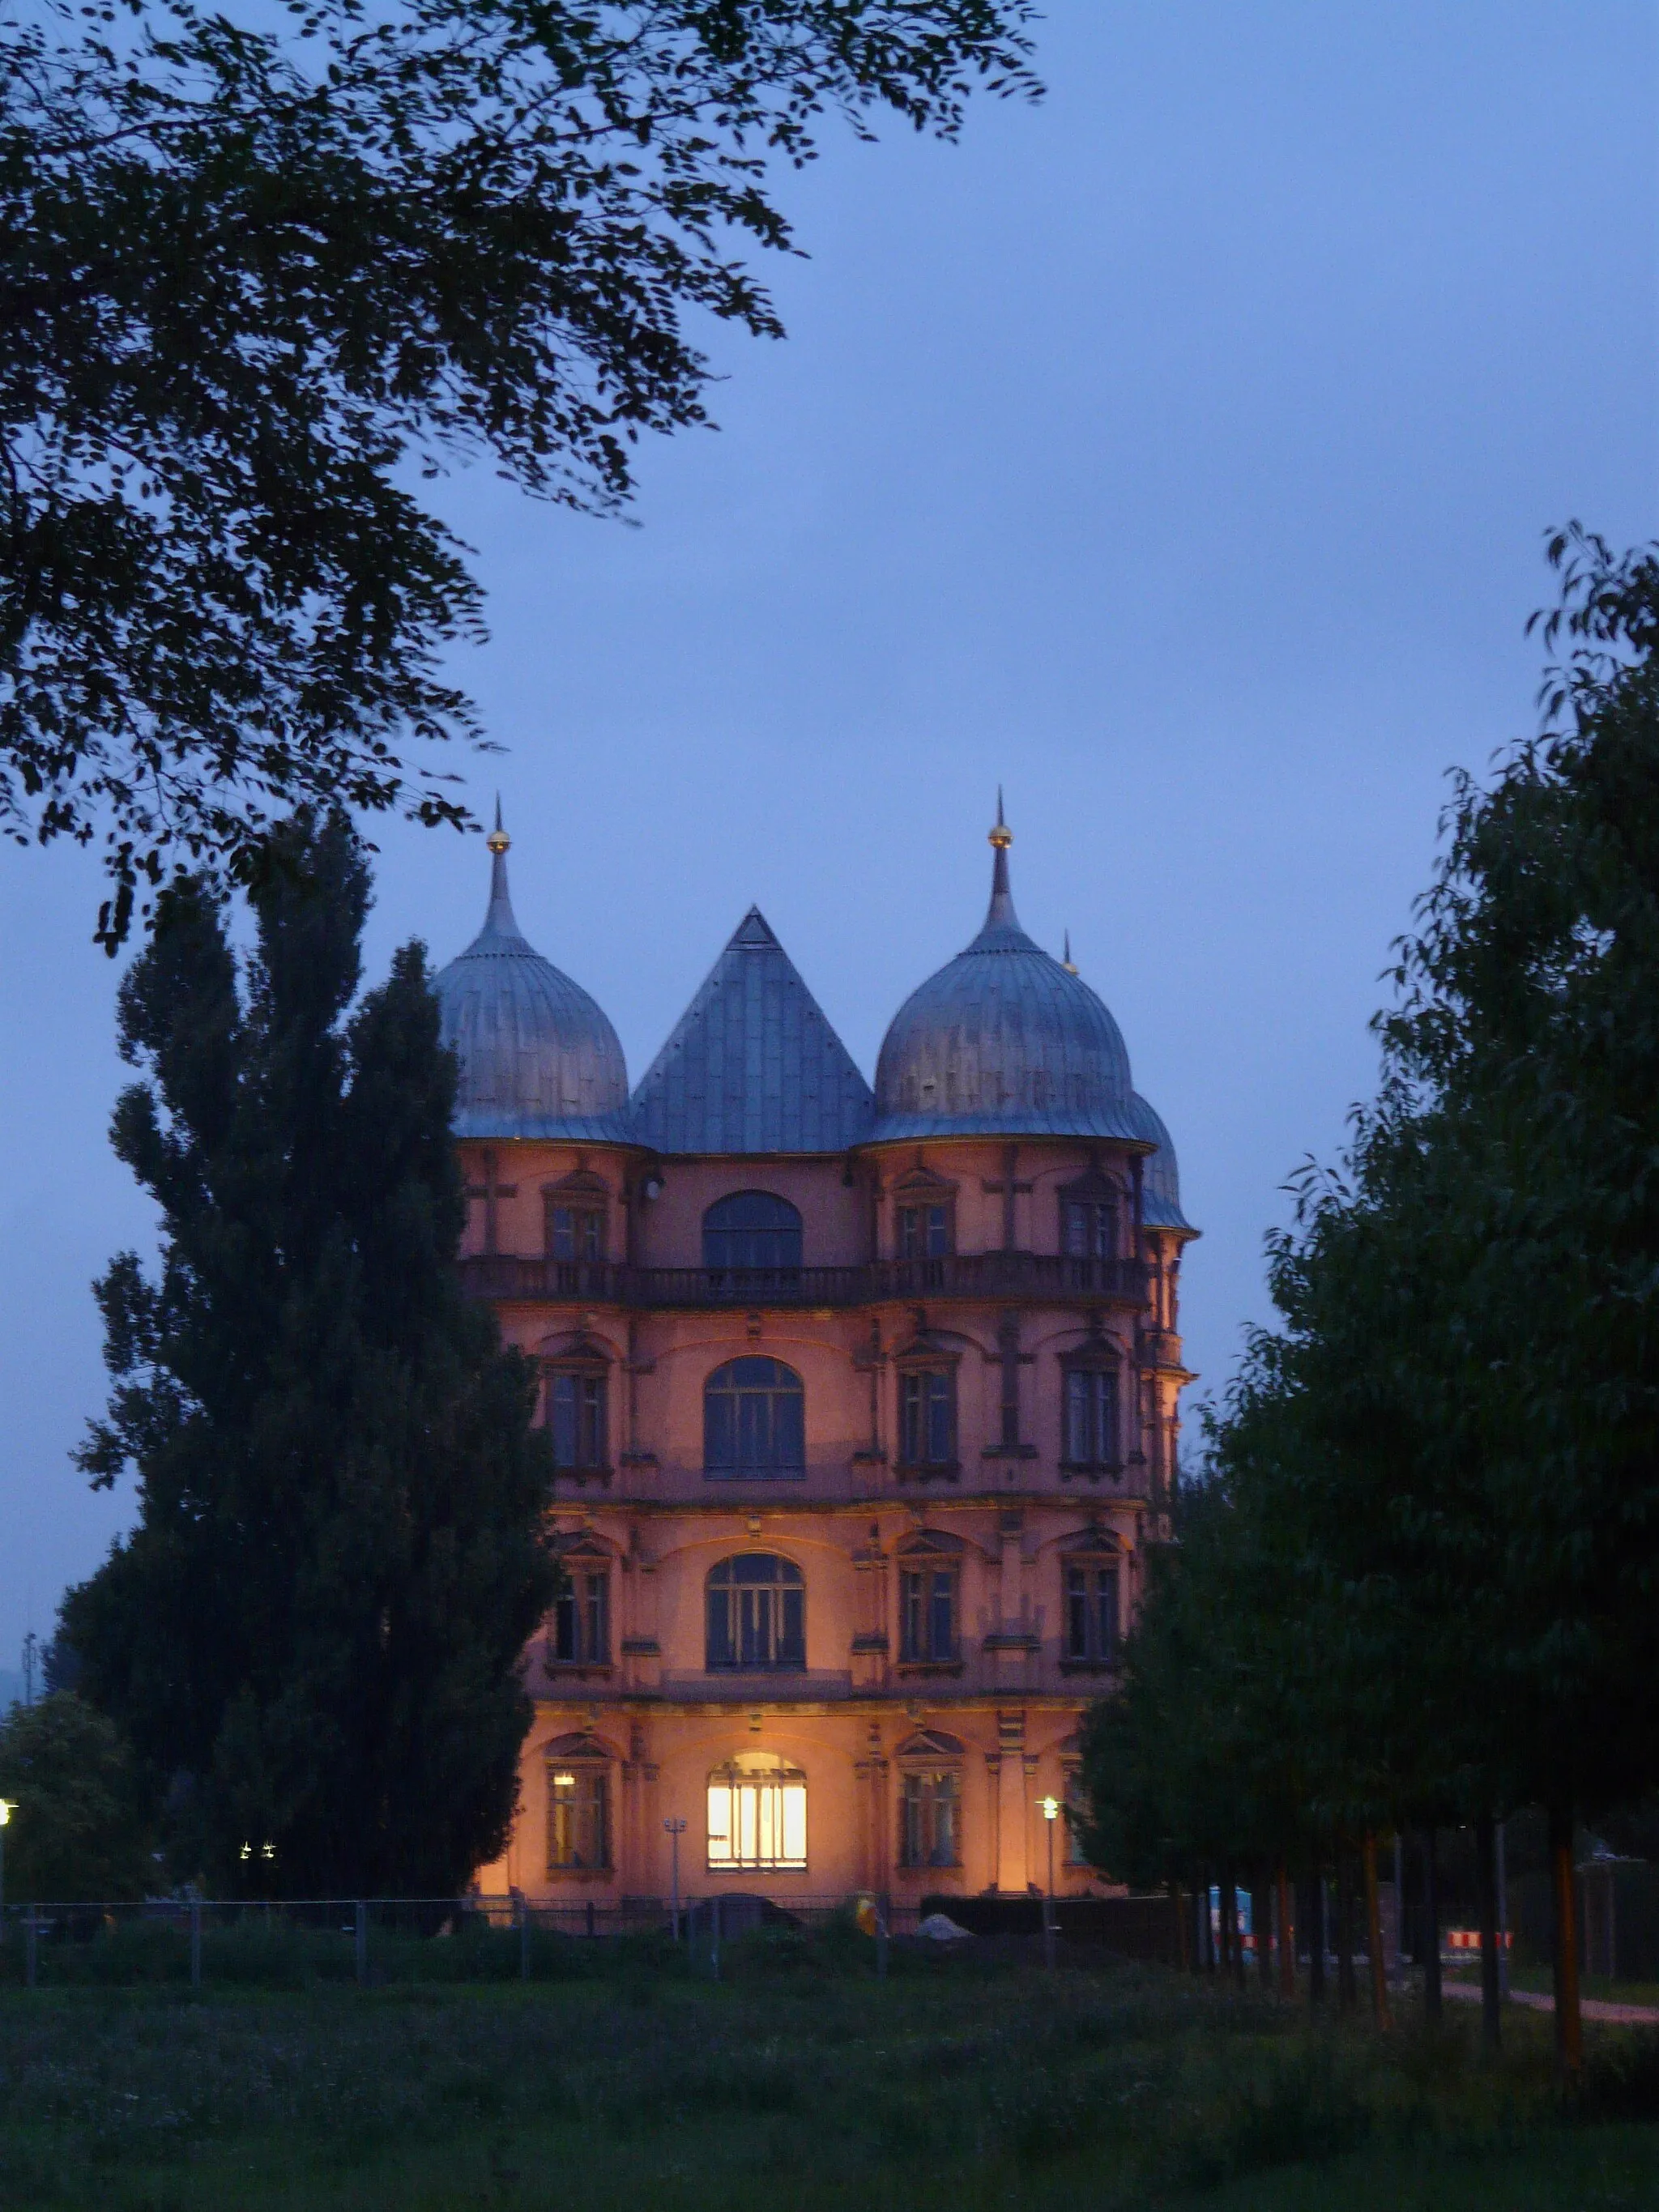 Photo showing: Bildinhalt: Schloss Gottesaue in Karlsruhe, Nordseite am Abend
Aufnahmeort: Karlsruhe, Deutschland